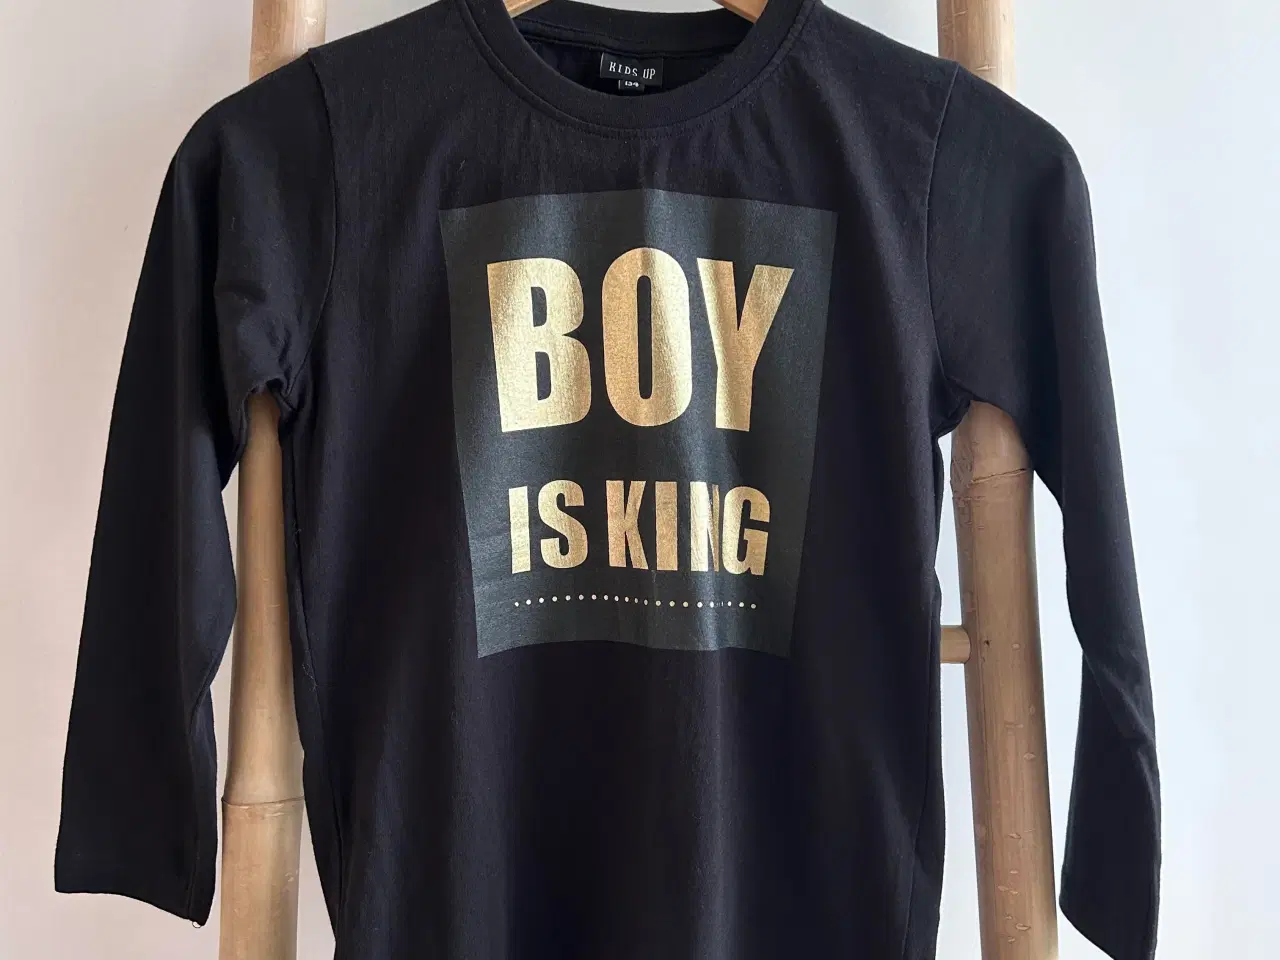 Billede 1 - Kids Up bluse med tryk 'BOY IS KING', str. 128-134